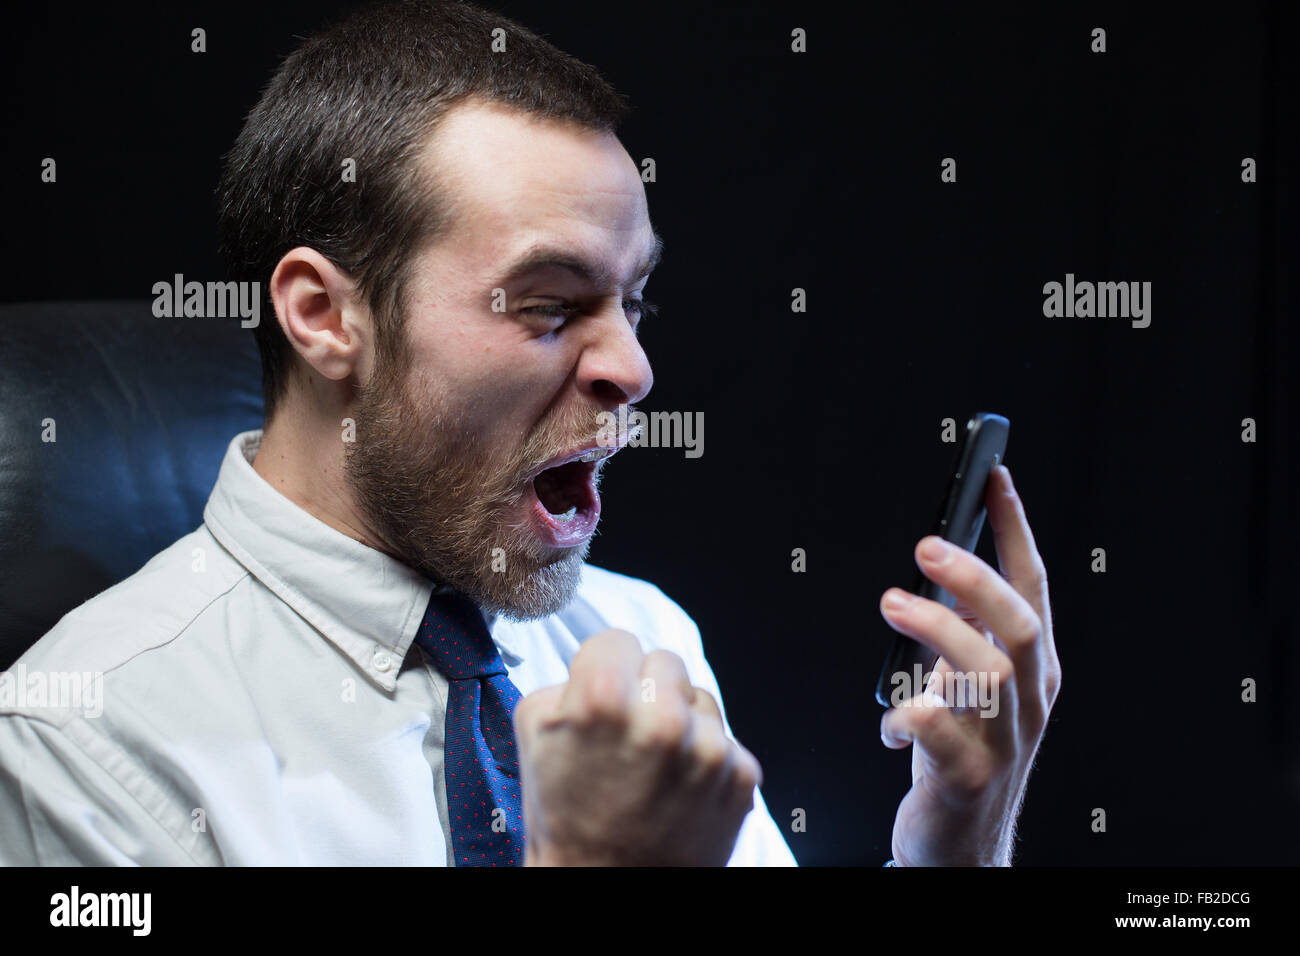 Ein Büroangestellter, trug ein Hemd und Krawatte, schreit nach unten ein Mobiltelefon im Zorn. Stockfoto